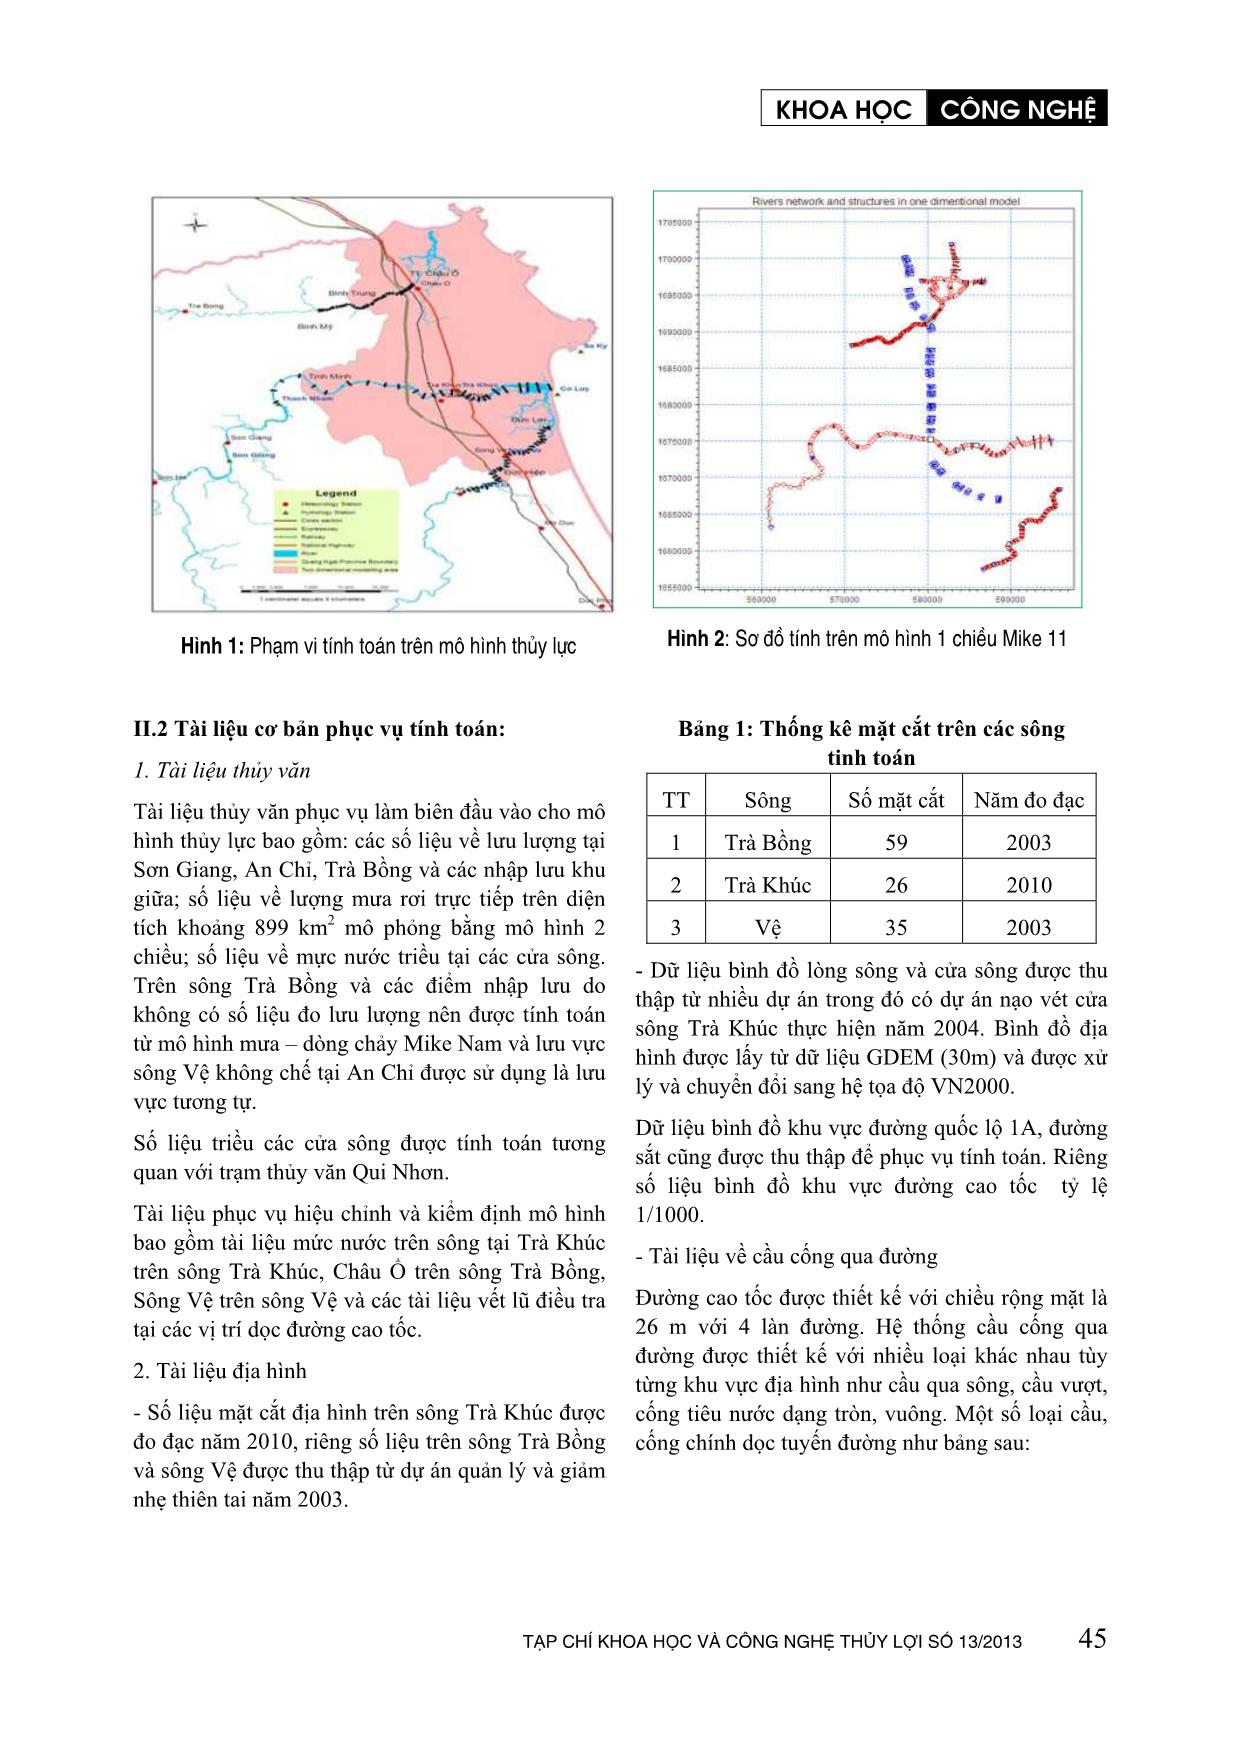 Đánh giá ảnh hưởng tiêu thoát lũ tỉnh Quảng Ngãi khi xây dựng tuyến đường cao tốc Đà Nẵng - Quảng Ngãi trang 2